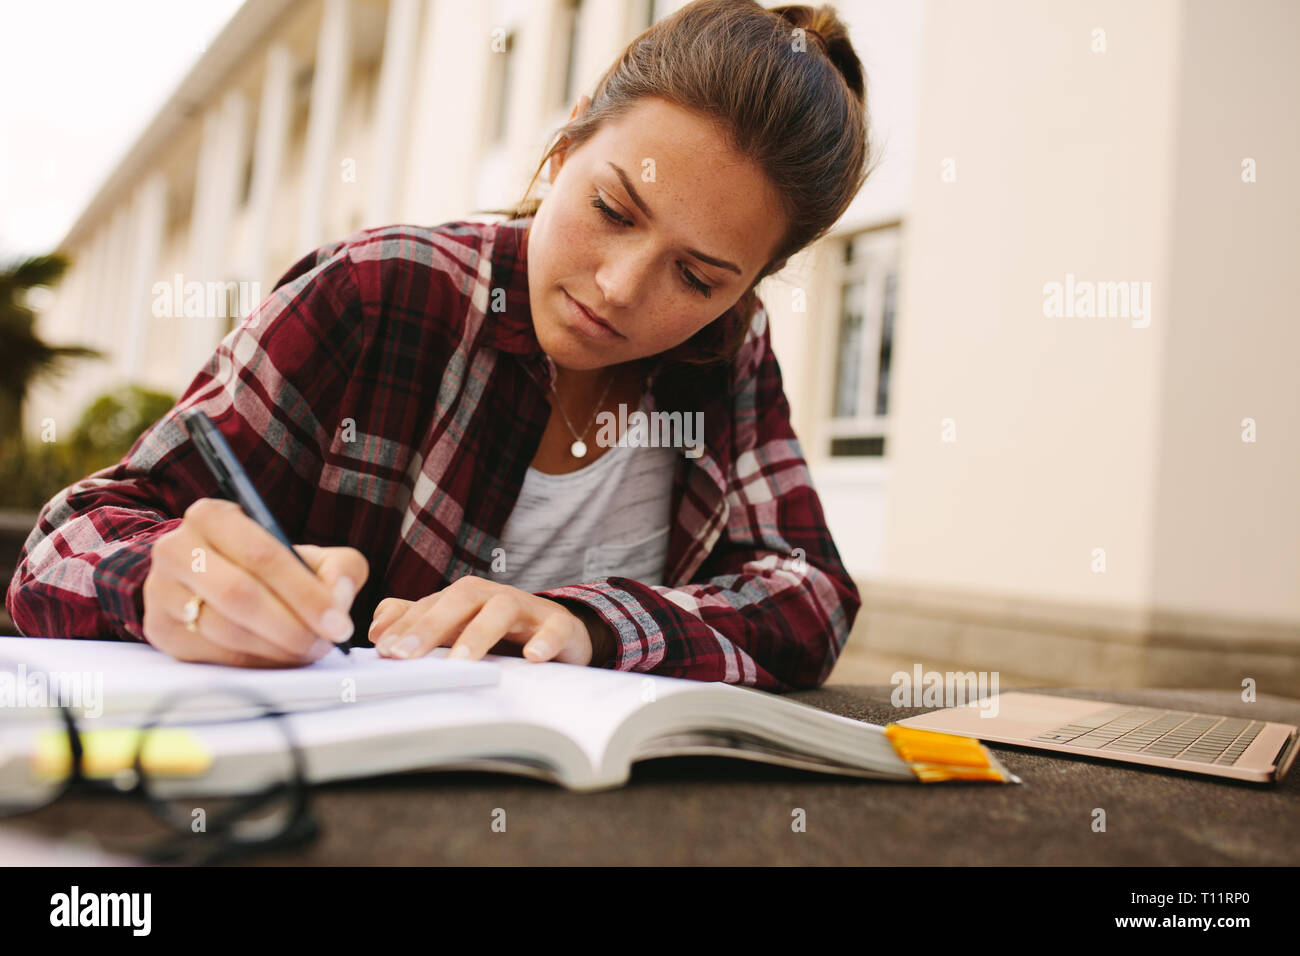 Studentin am College Campus sitzen und sich Notizen. Mädchen Studenten studieren an der Universität. Stockfoto